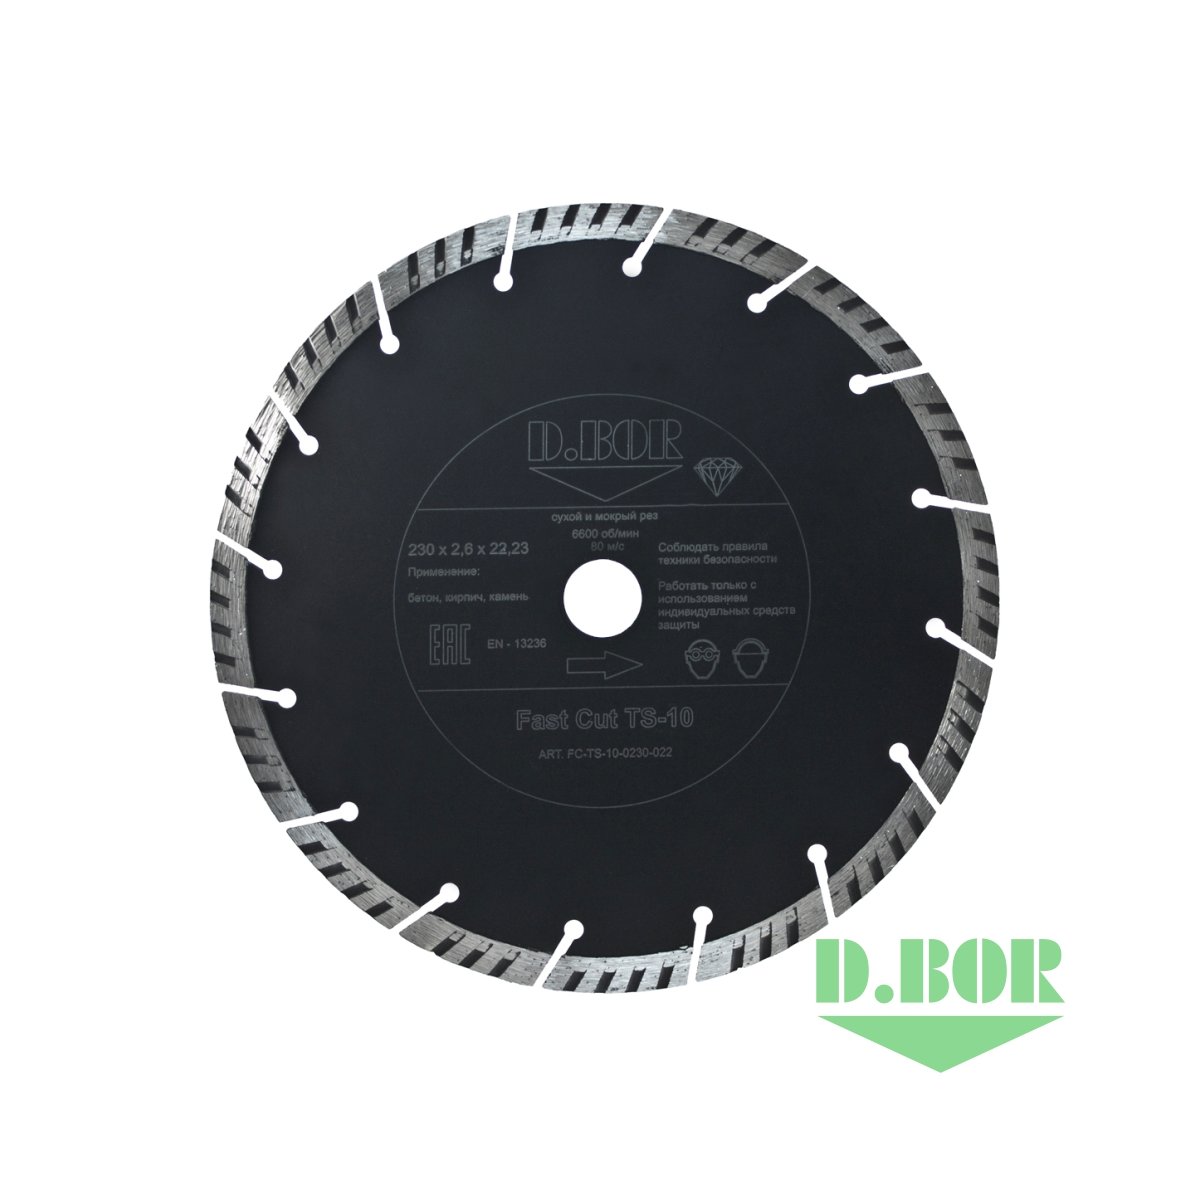 Алмазный диск Fast Cut TS-10, 350x3,2x25,40 (арт. FC-TS-10-0350-025) "D.BOR"